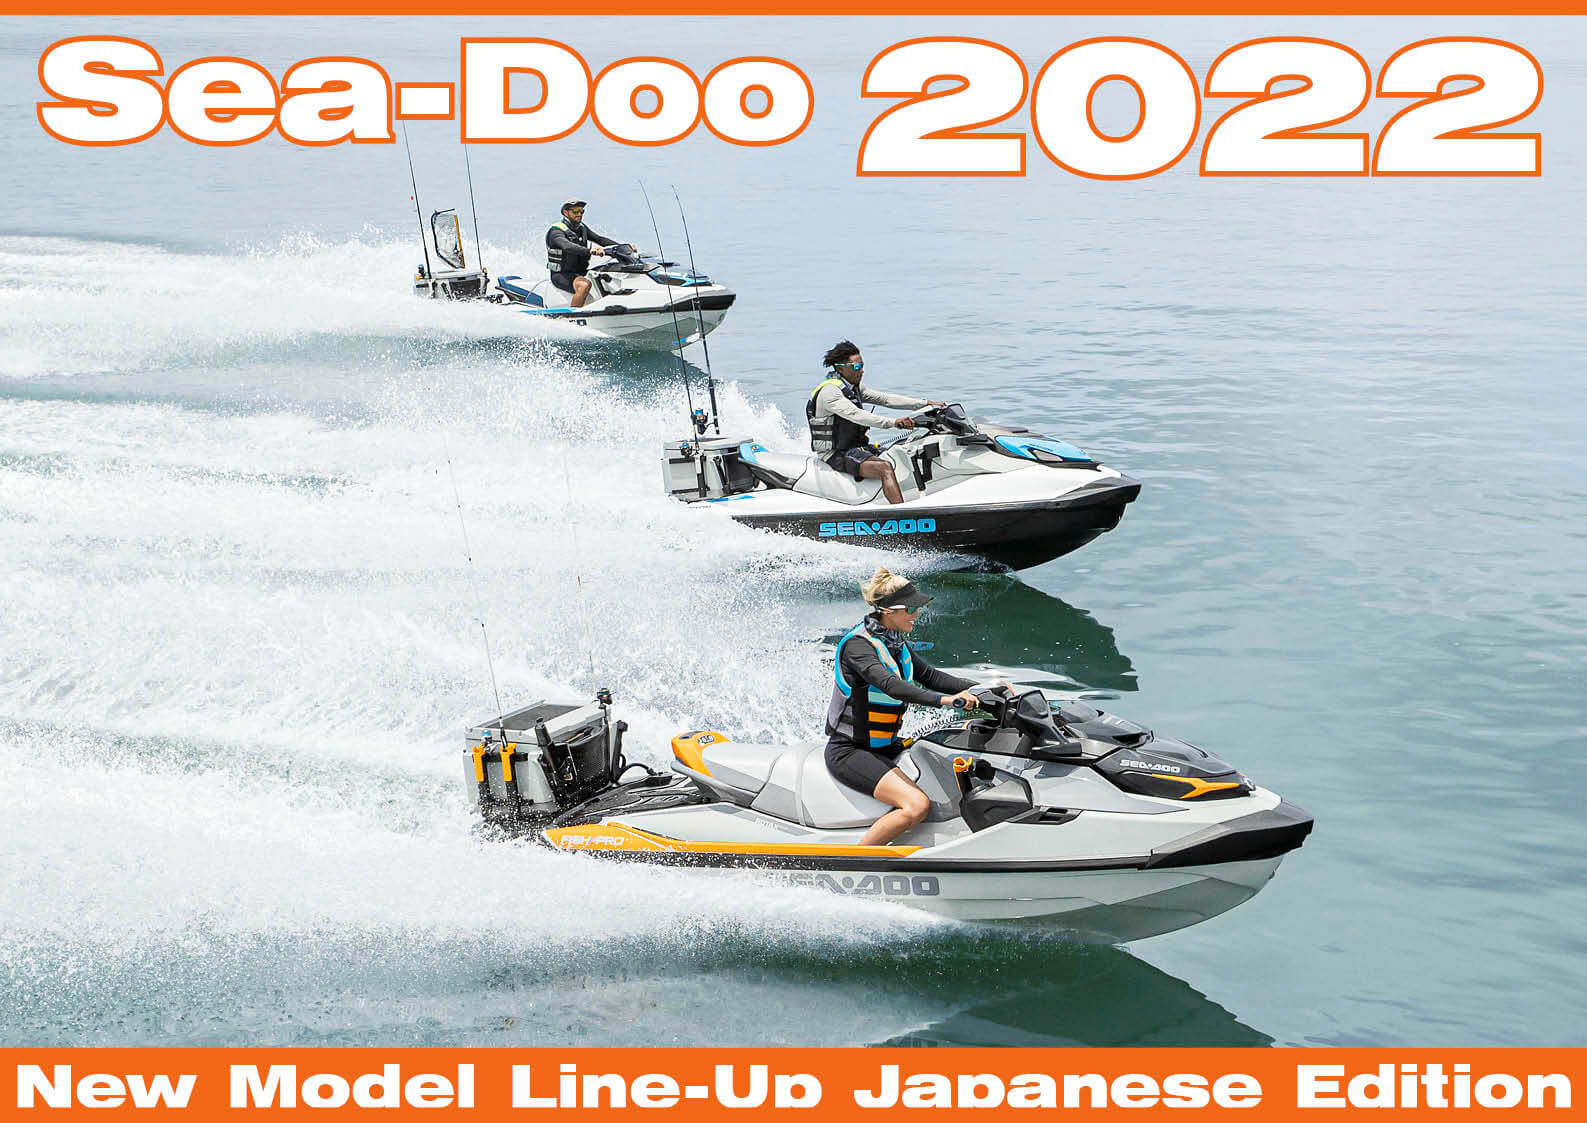 2022年 ヤマハ スポーツボート　全モデルラインナップ　（水上バイク）